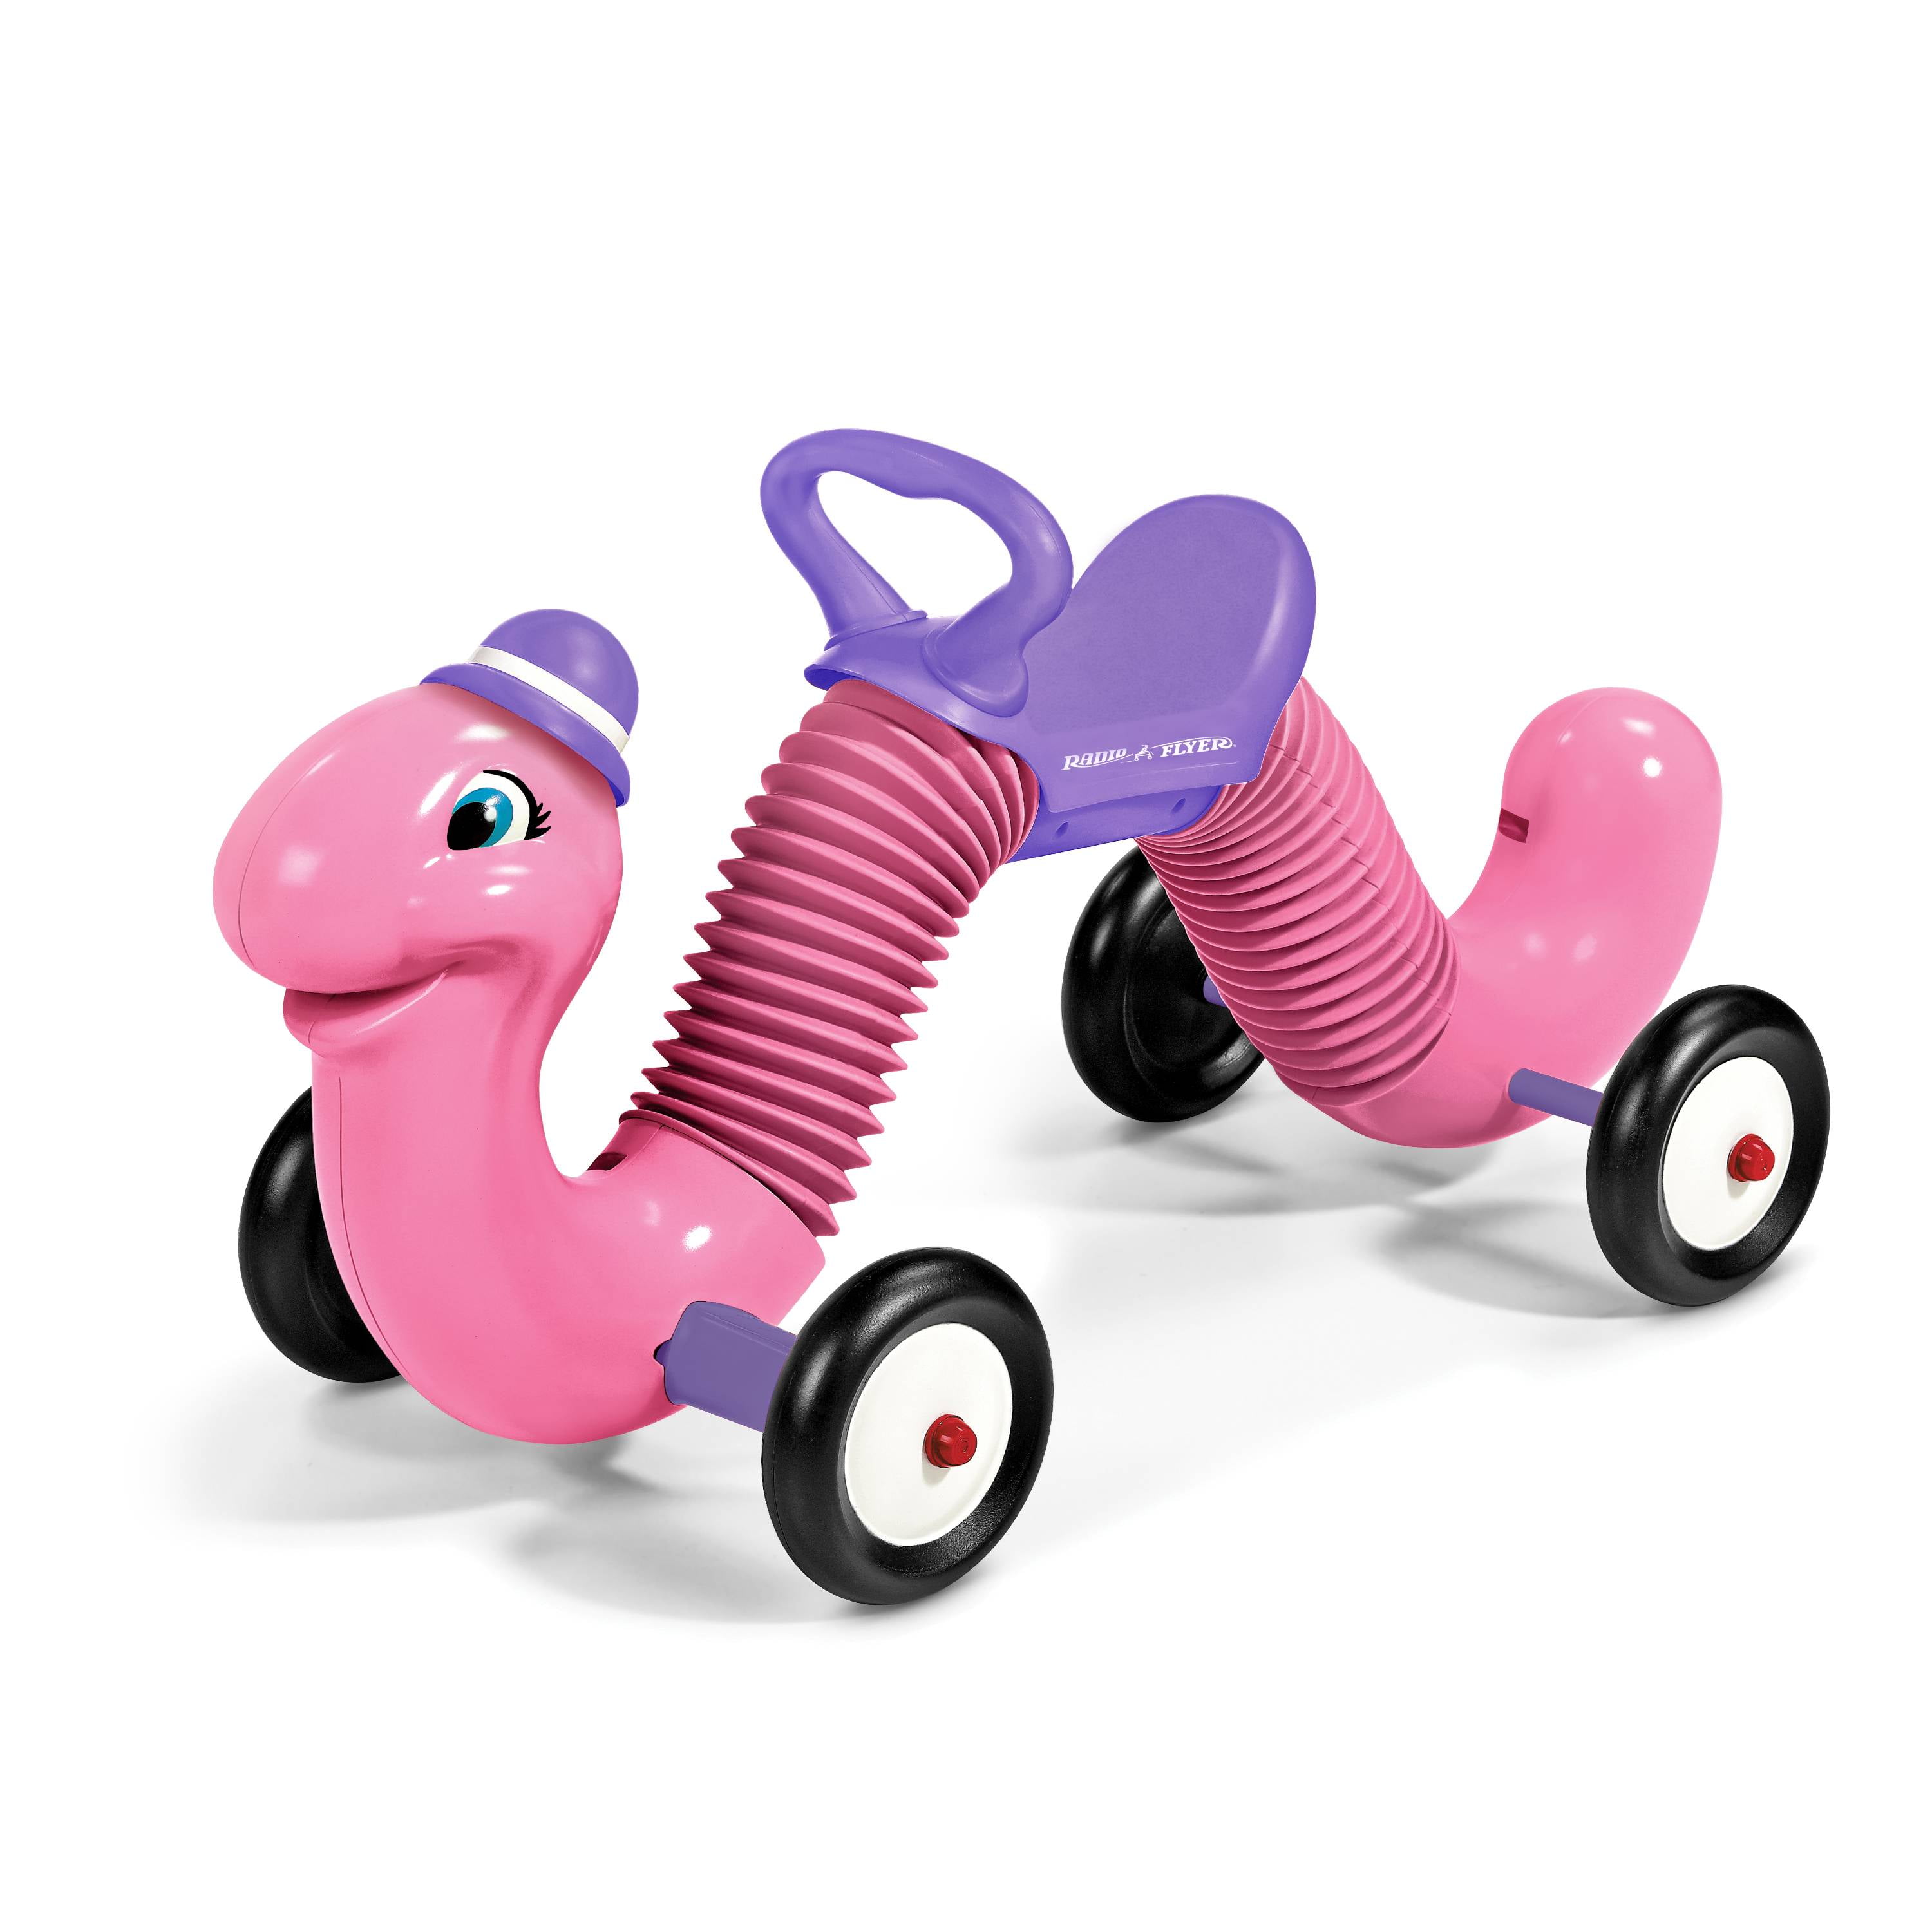 inchworm riding toy